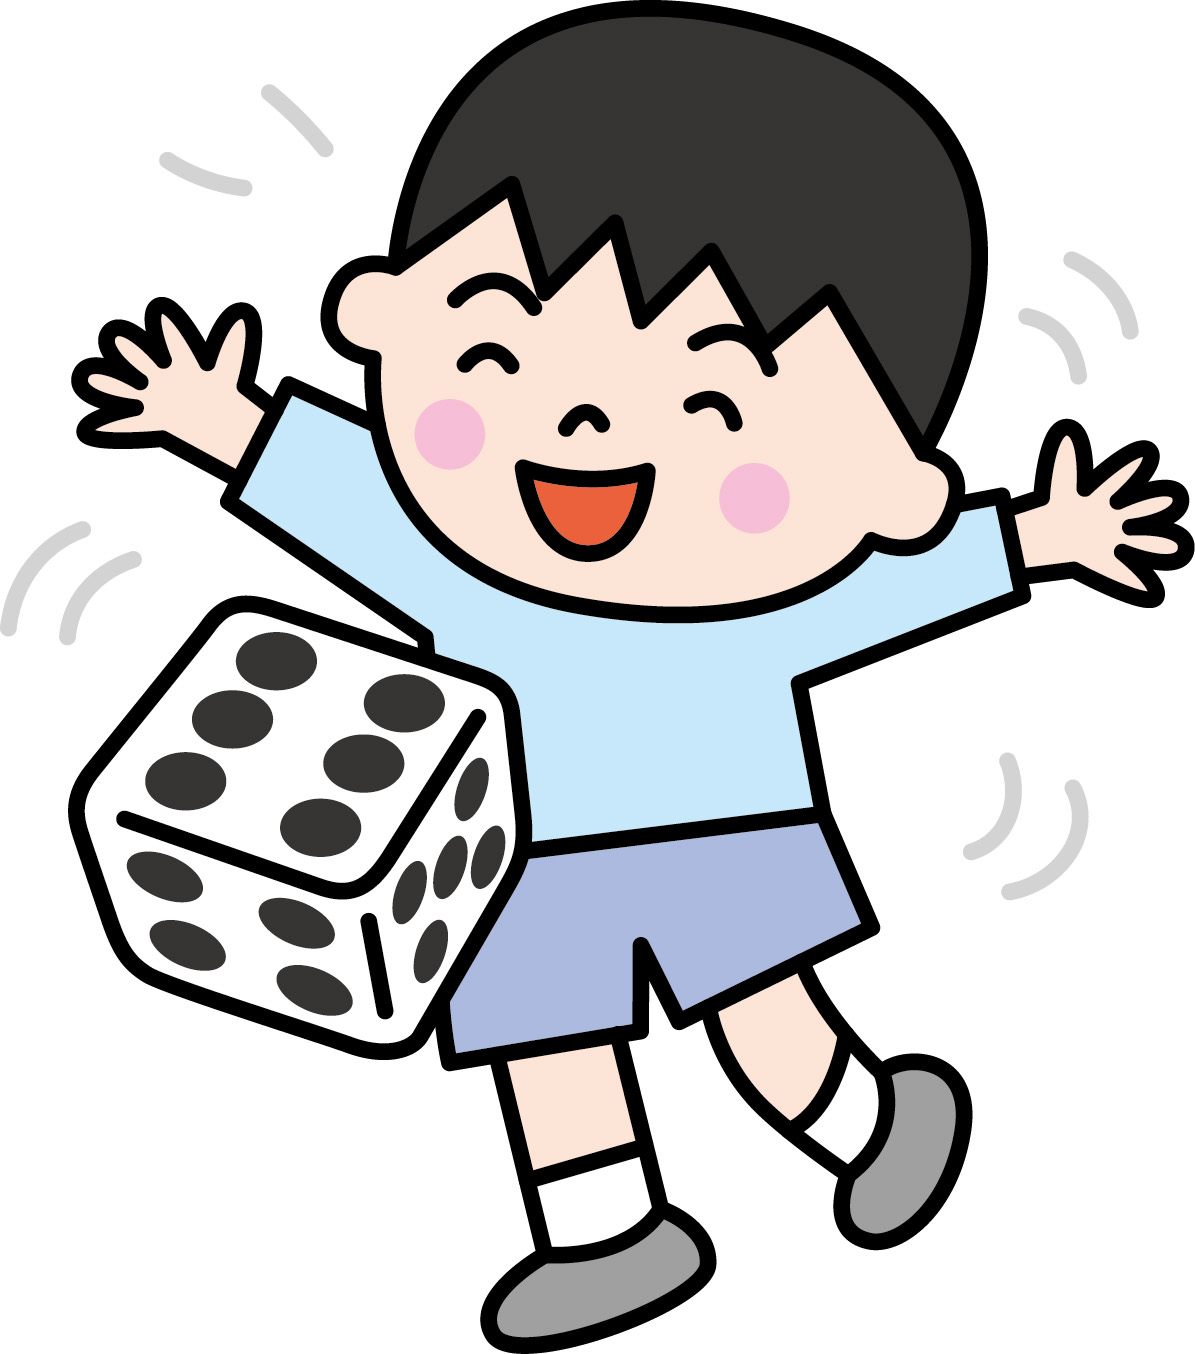 2月9日 23日 お買い物して楽しいゲームにチャレンジ 大津市の平和堂石山で サイコロゲーム大会 が開催 滋賀のママがイベント 育児 遊び 学びを発信 シガマンマ ピースマム